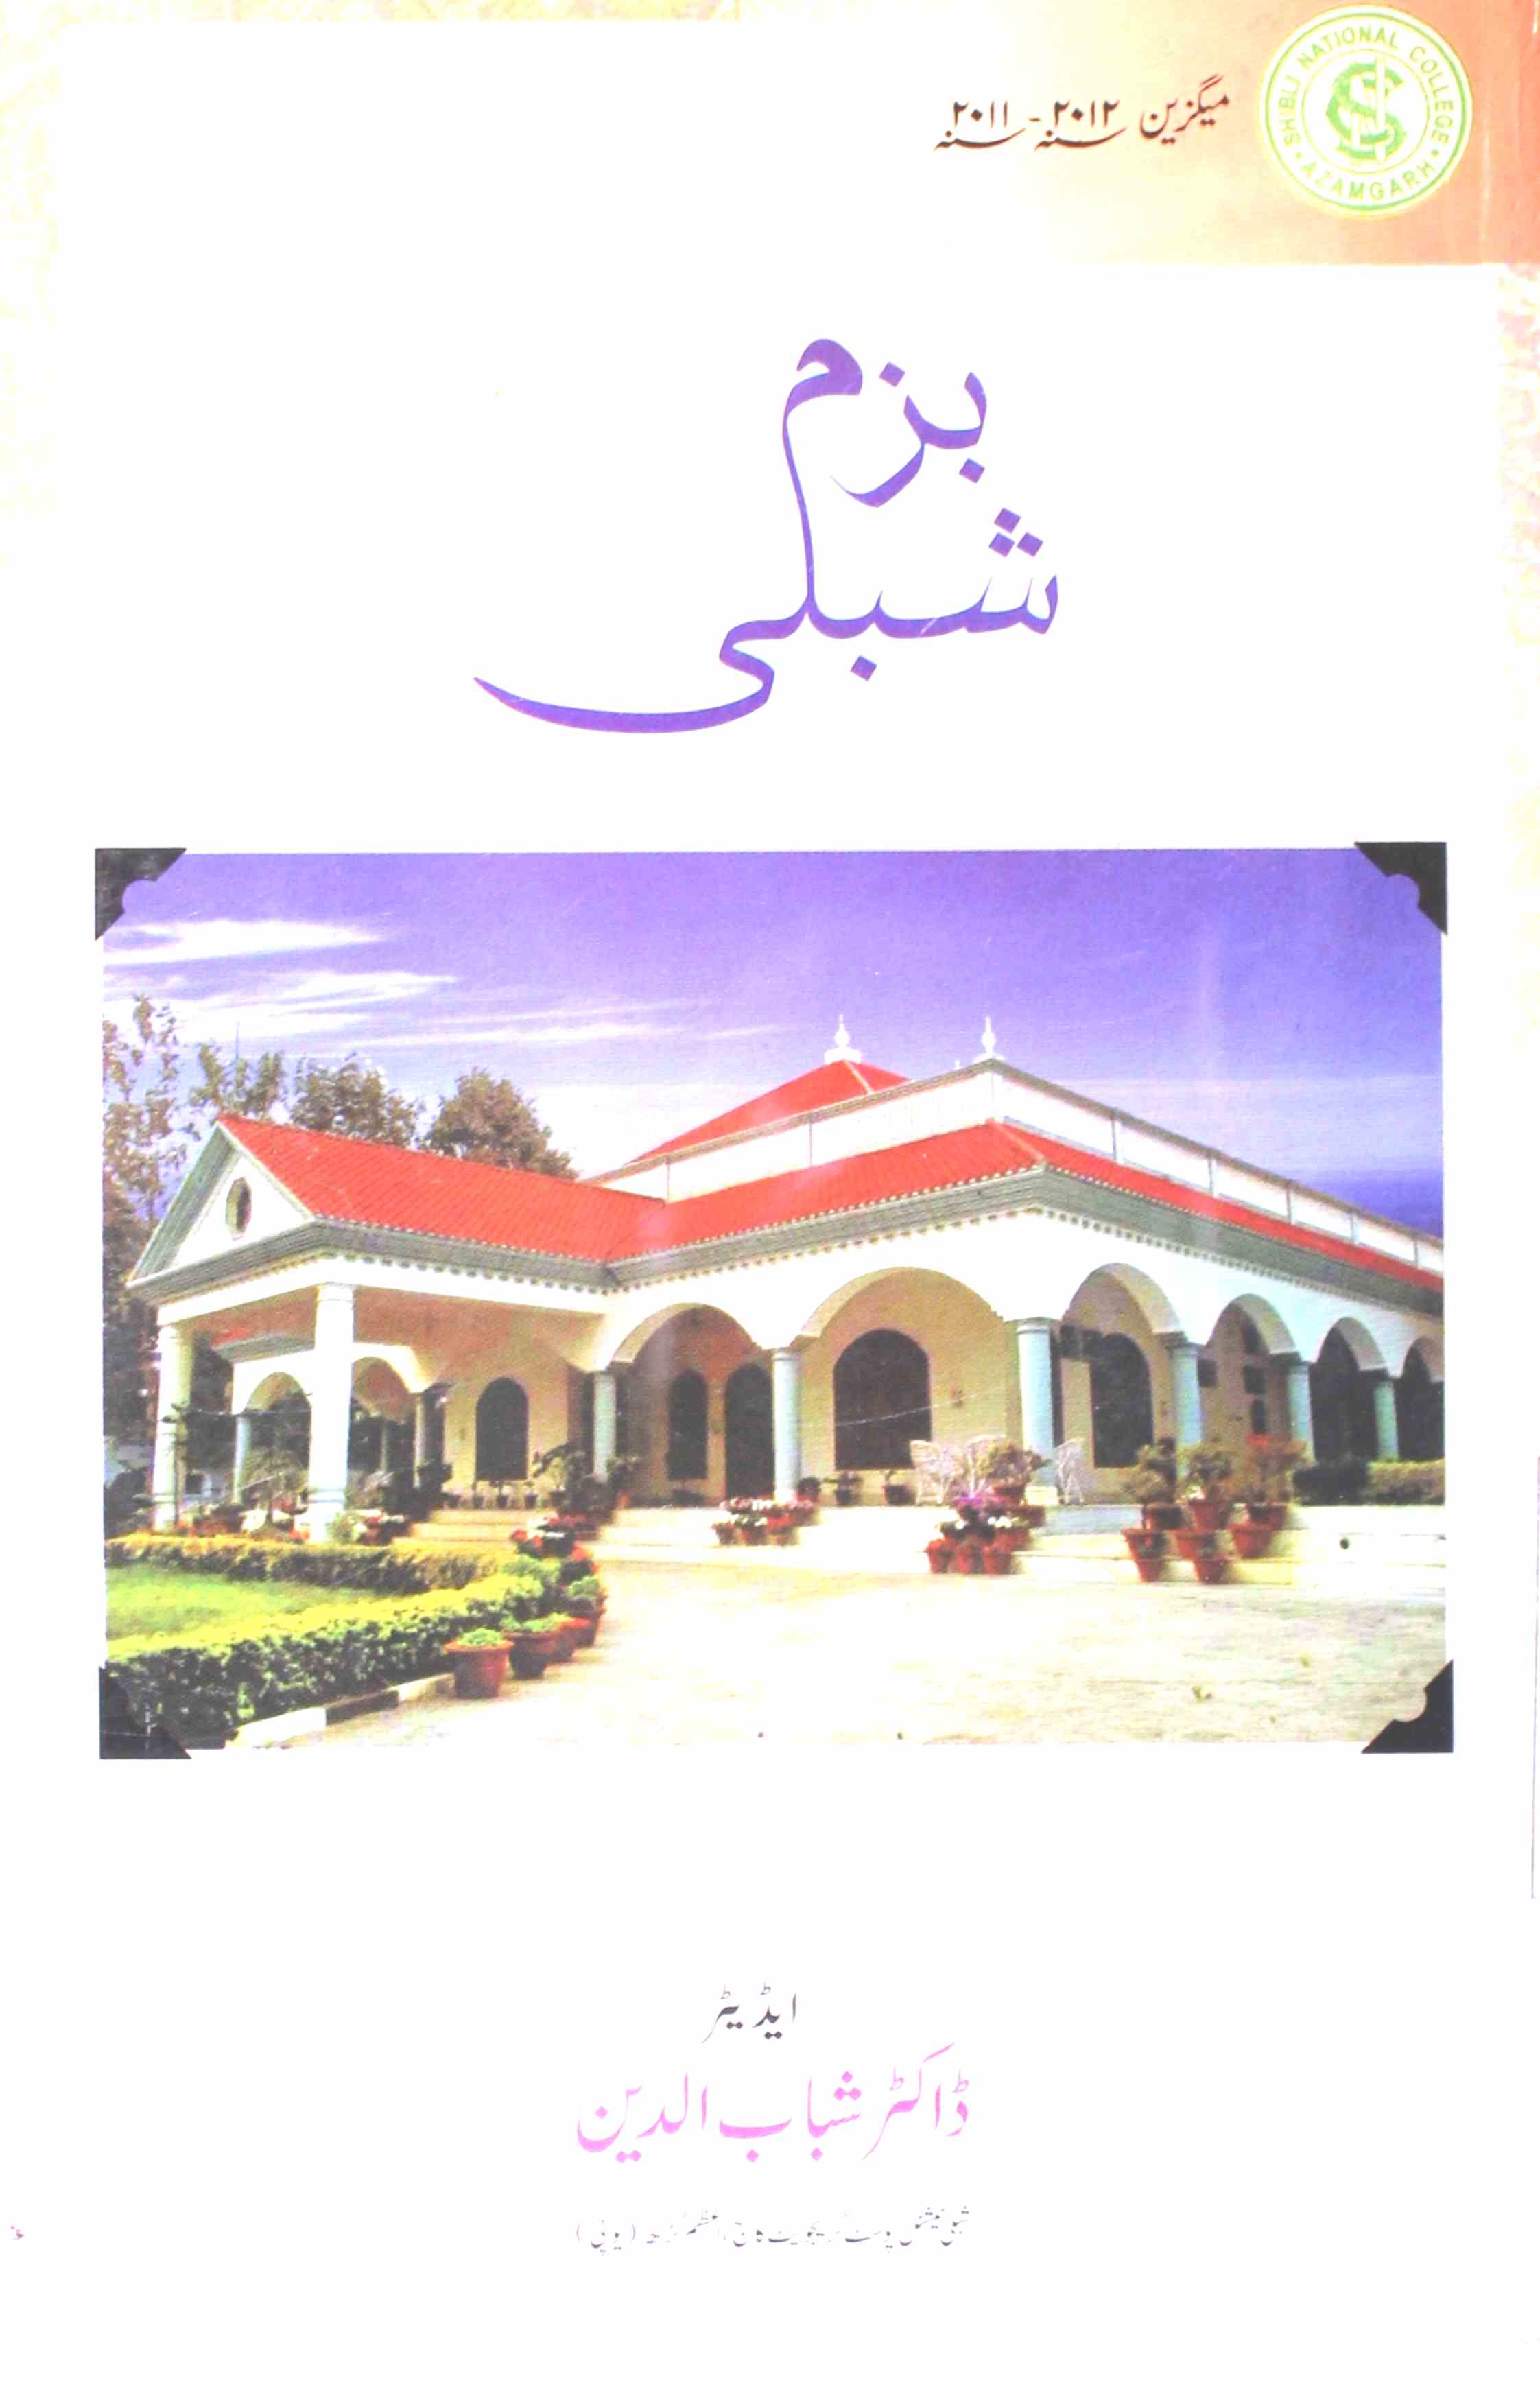 Bazm-e- Shibli  2011 2012